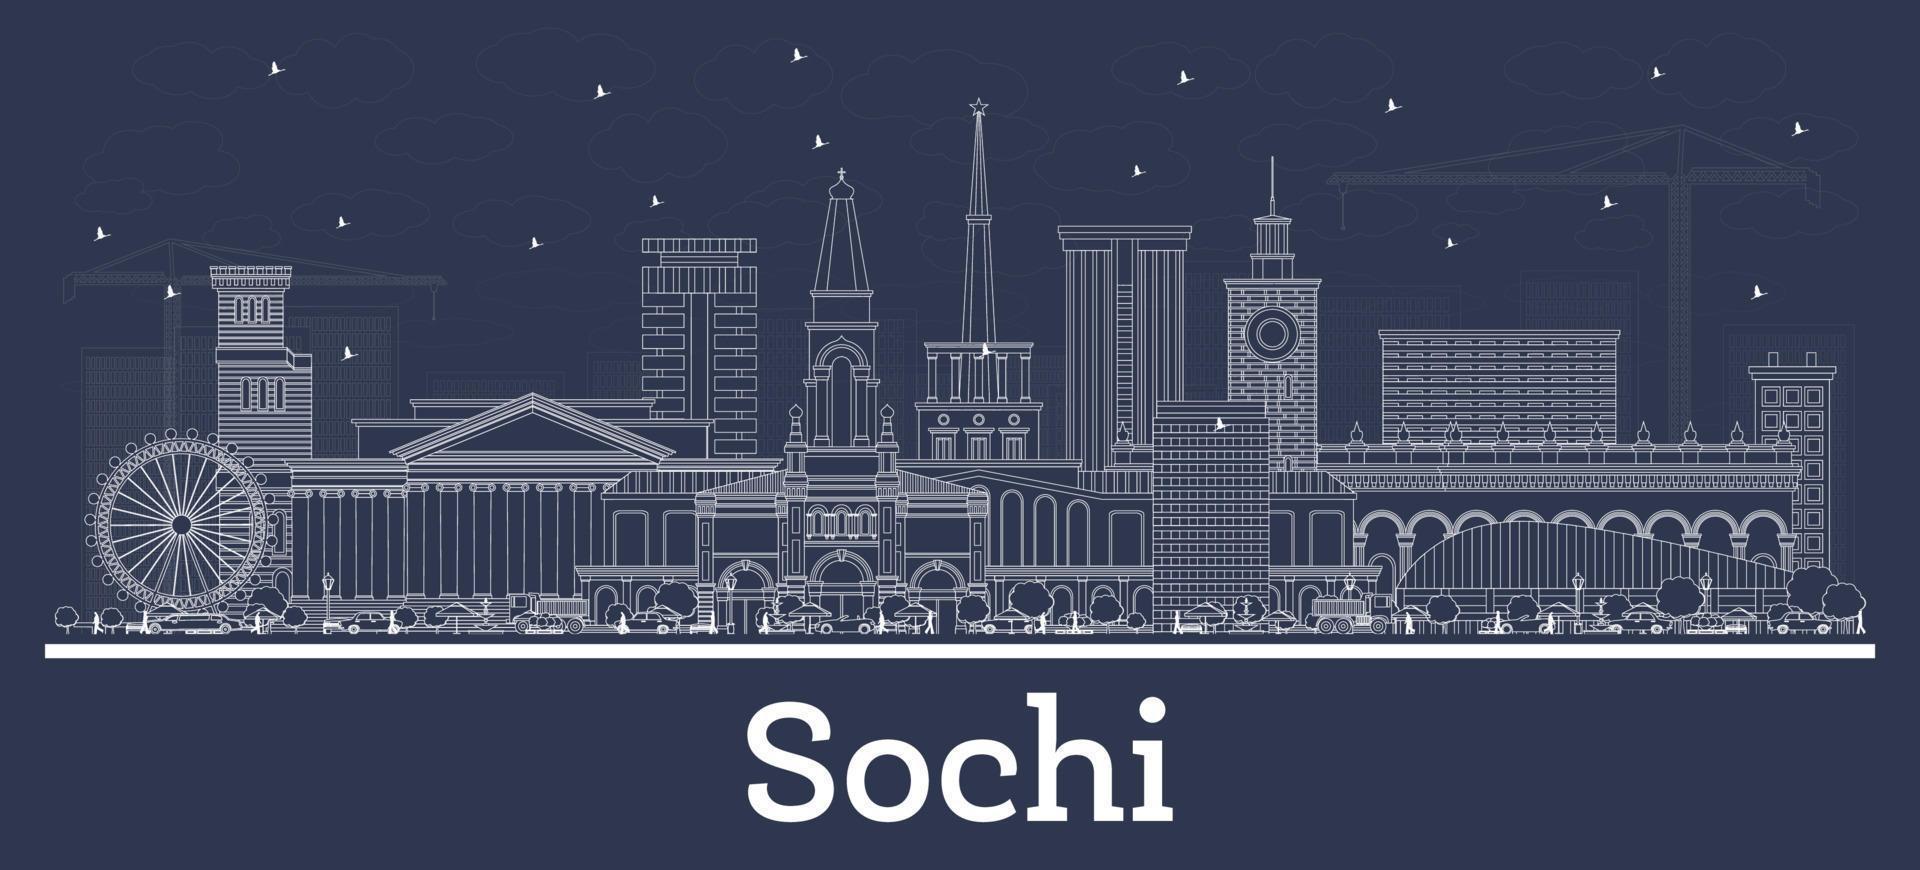 delinear o horizonte da cidade de sochi rússia com edifícios brancos. vetor